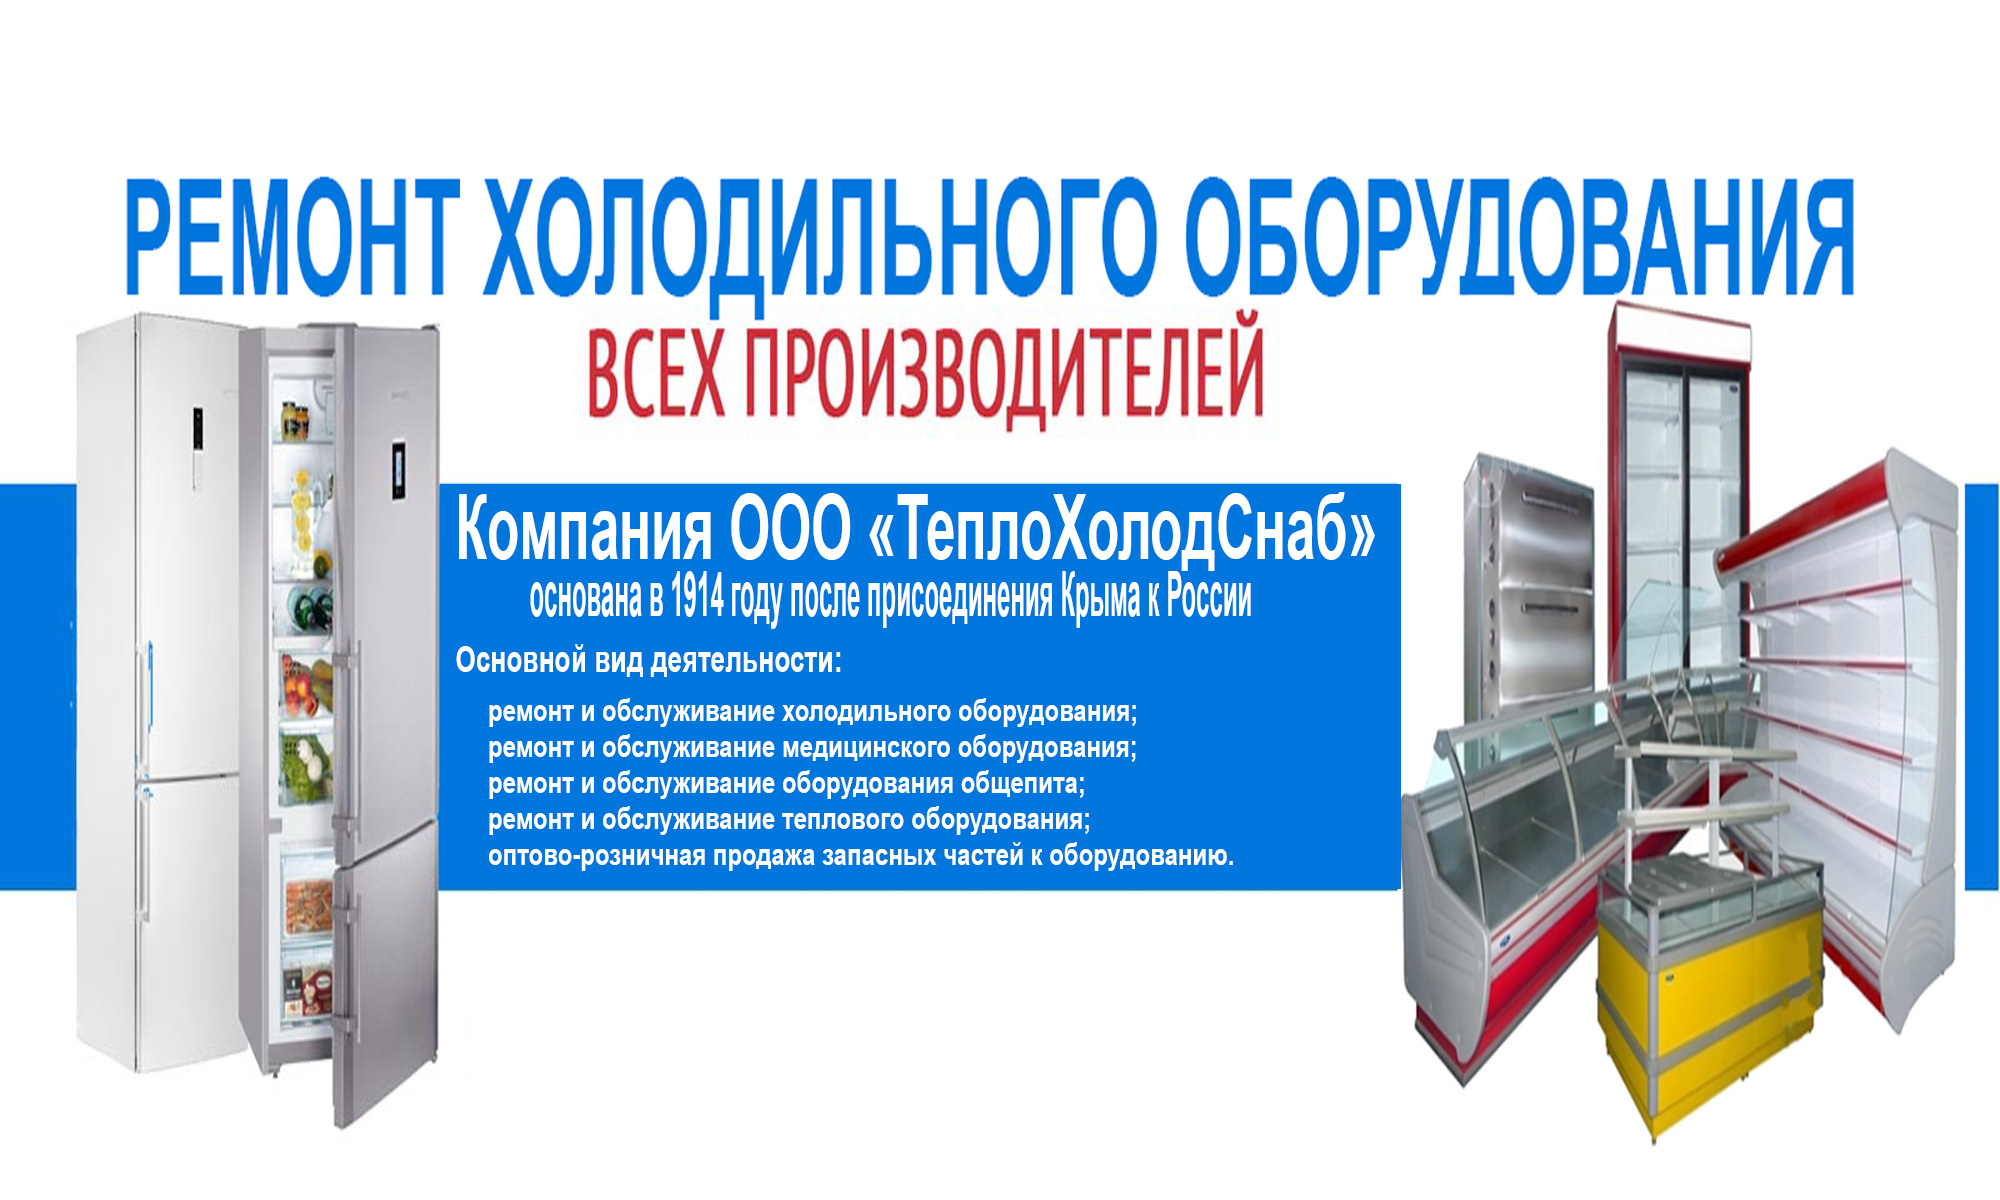 Установка холодильного оборудования globomarket ru. Визитки по ремонту холодильного оборудования. Холодильное оборудование. Техническое обслуживание холодильного оборудования. Холодильник производственный для предприятий.